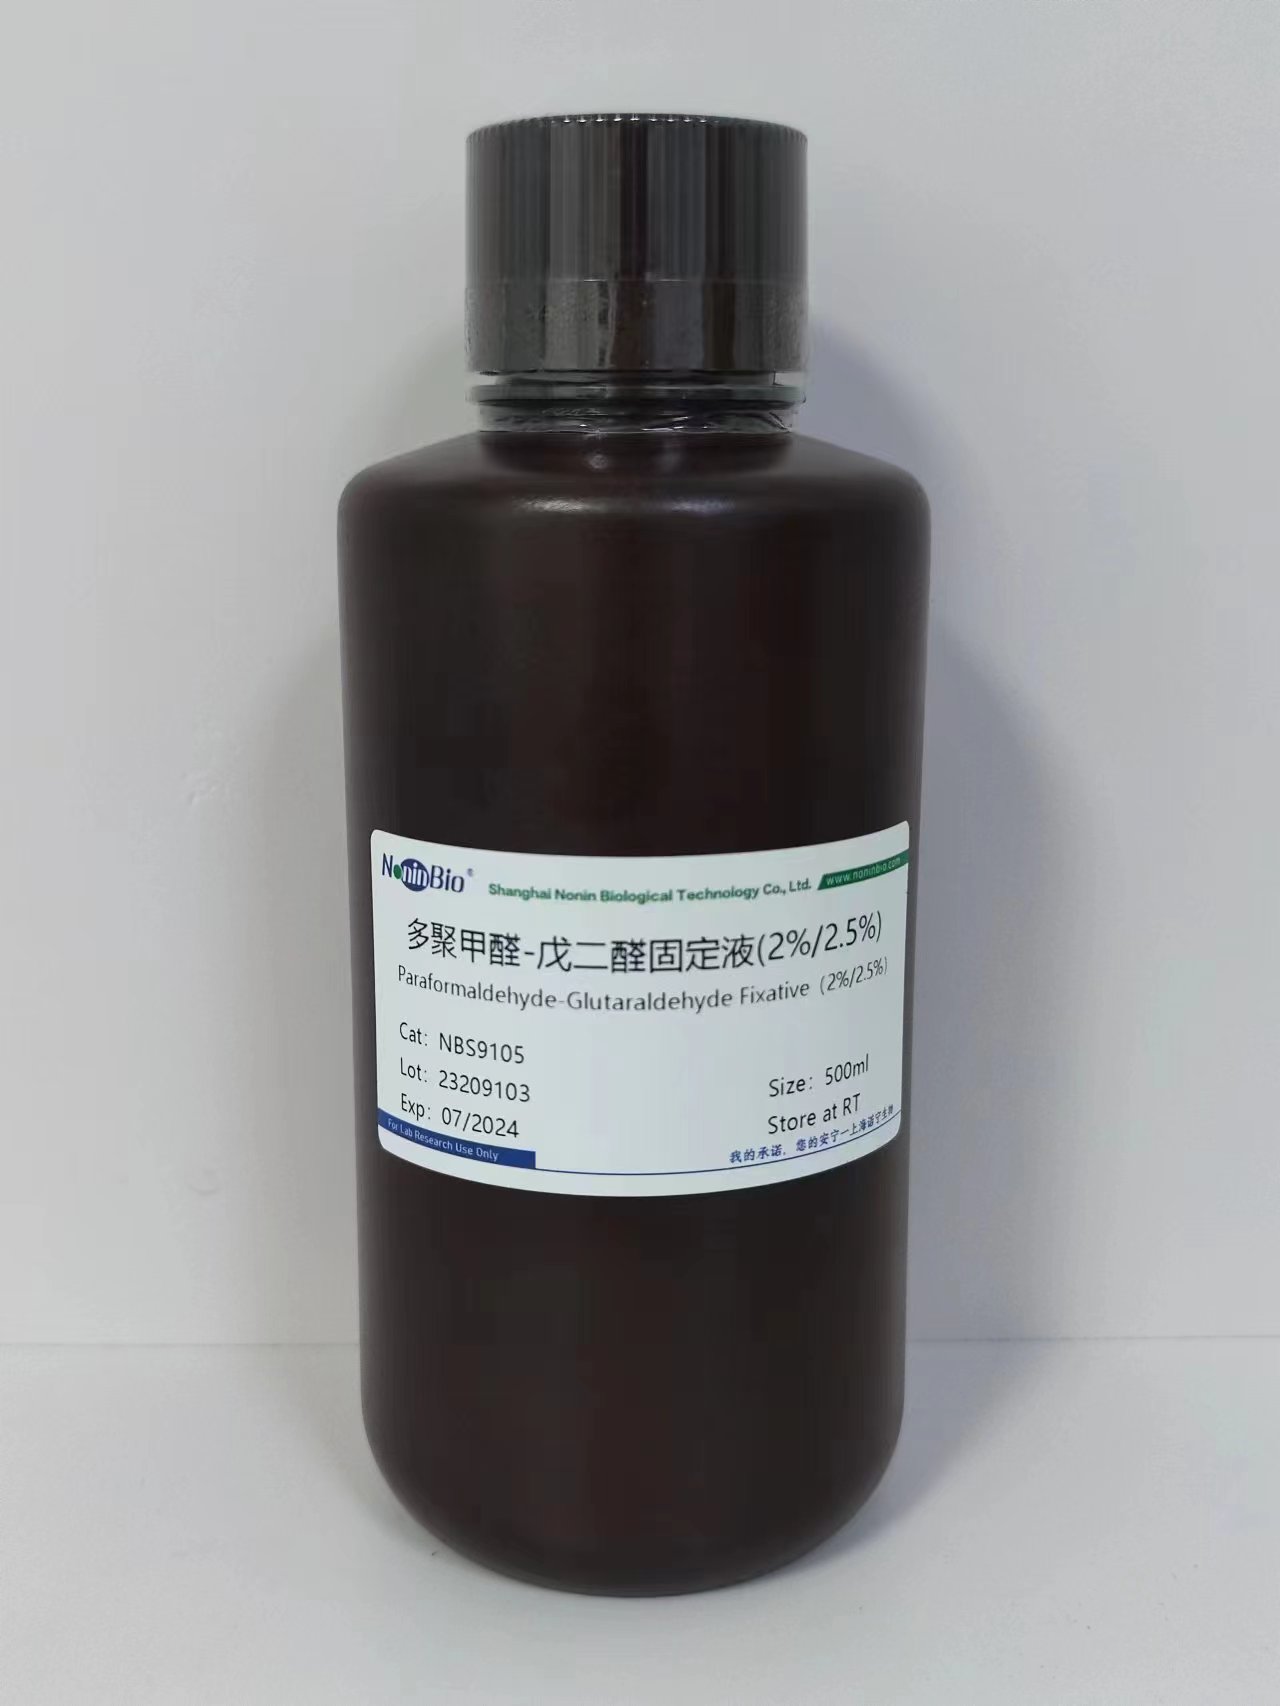 多聚甲醛-戊二醛固定液(2%/2.5%)